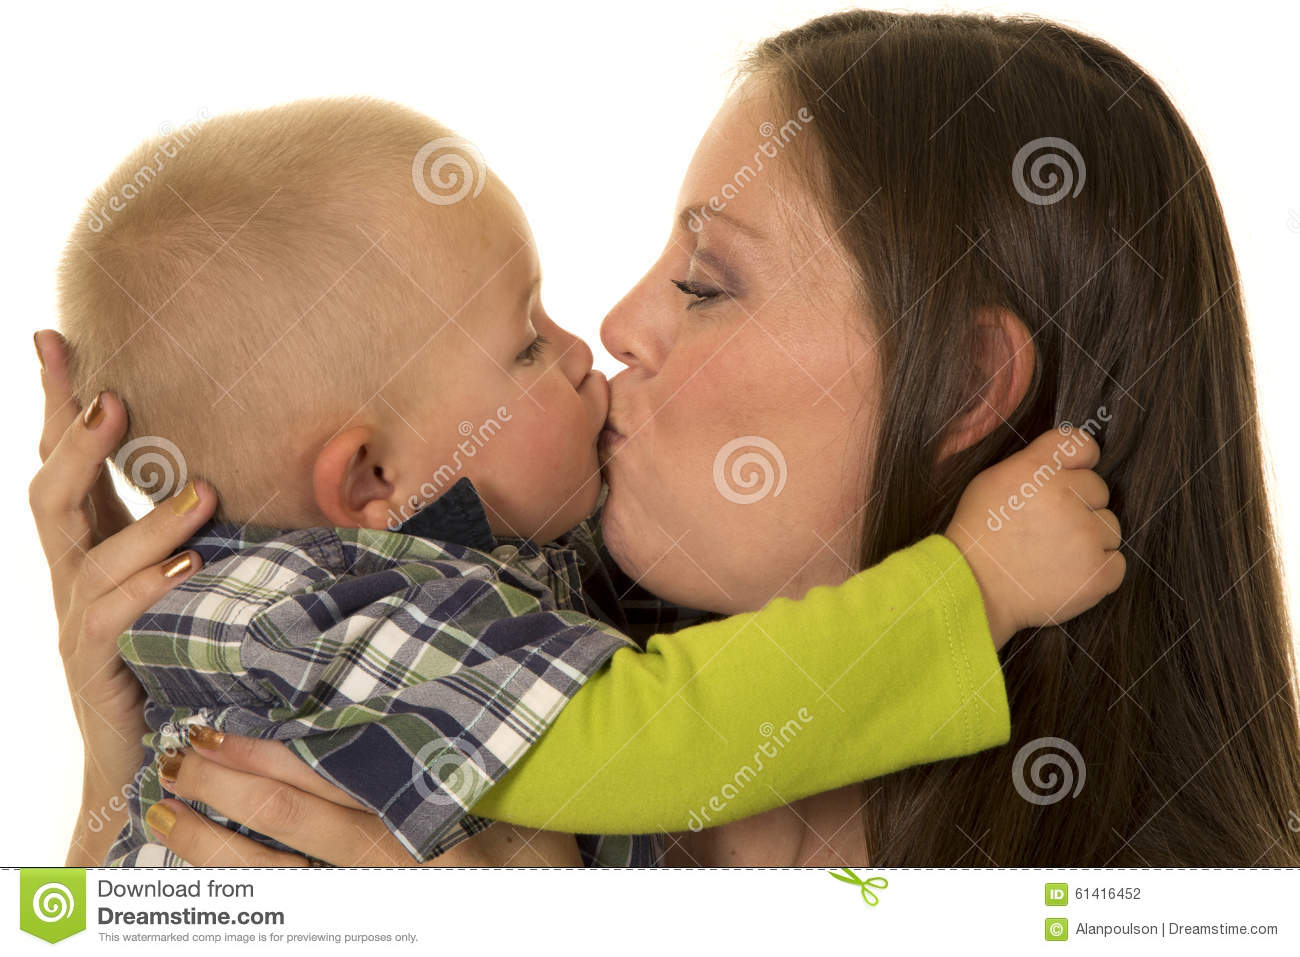 Mantis reccomend Women kiss little boy